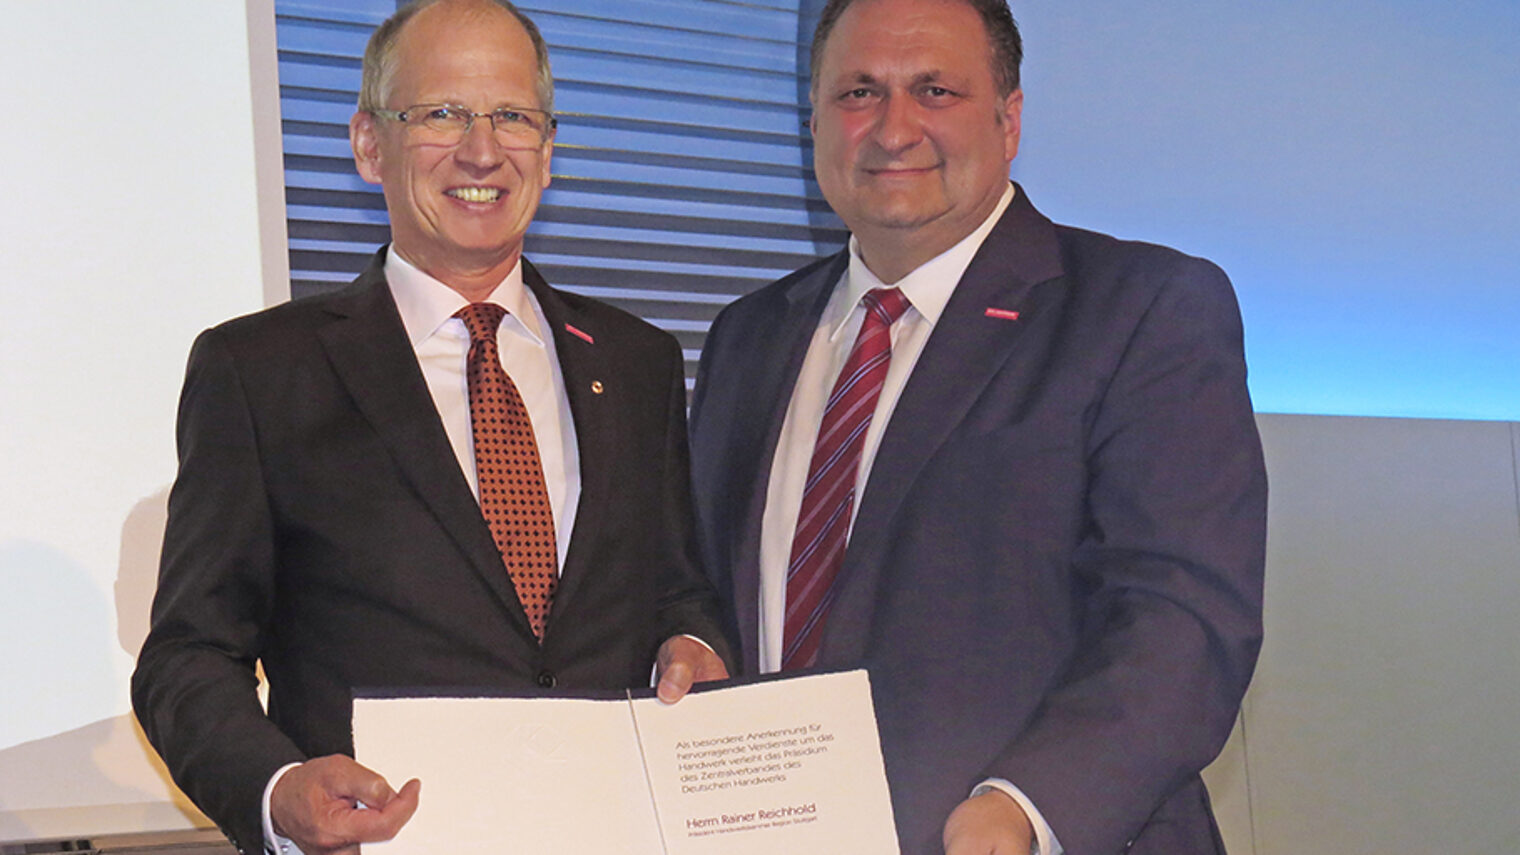 Hohe Auszeichnung: Der ZDH-Präsident Hans Peter Wollseifer (rechts) verleiht Kammerpräsident Rainer Reichhold (links) das Handwerkszeichen in Gold. 